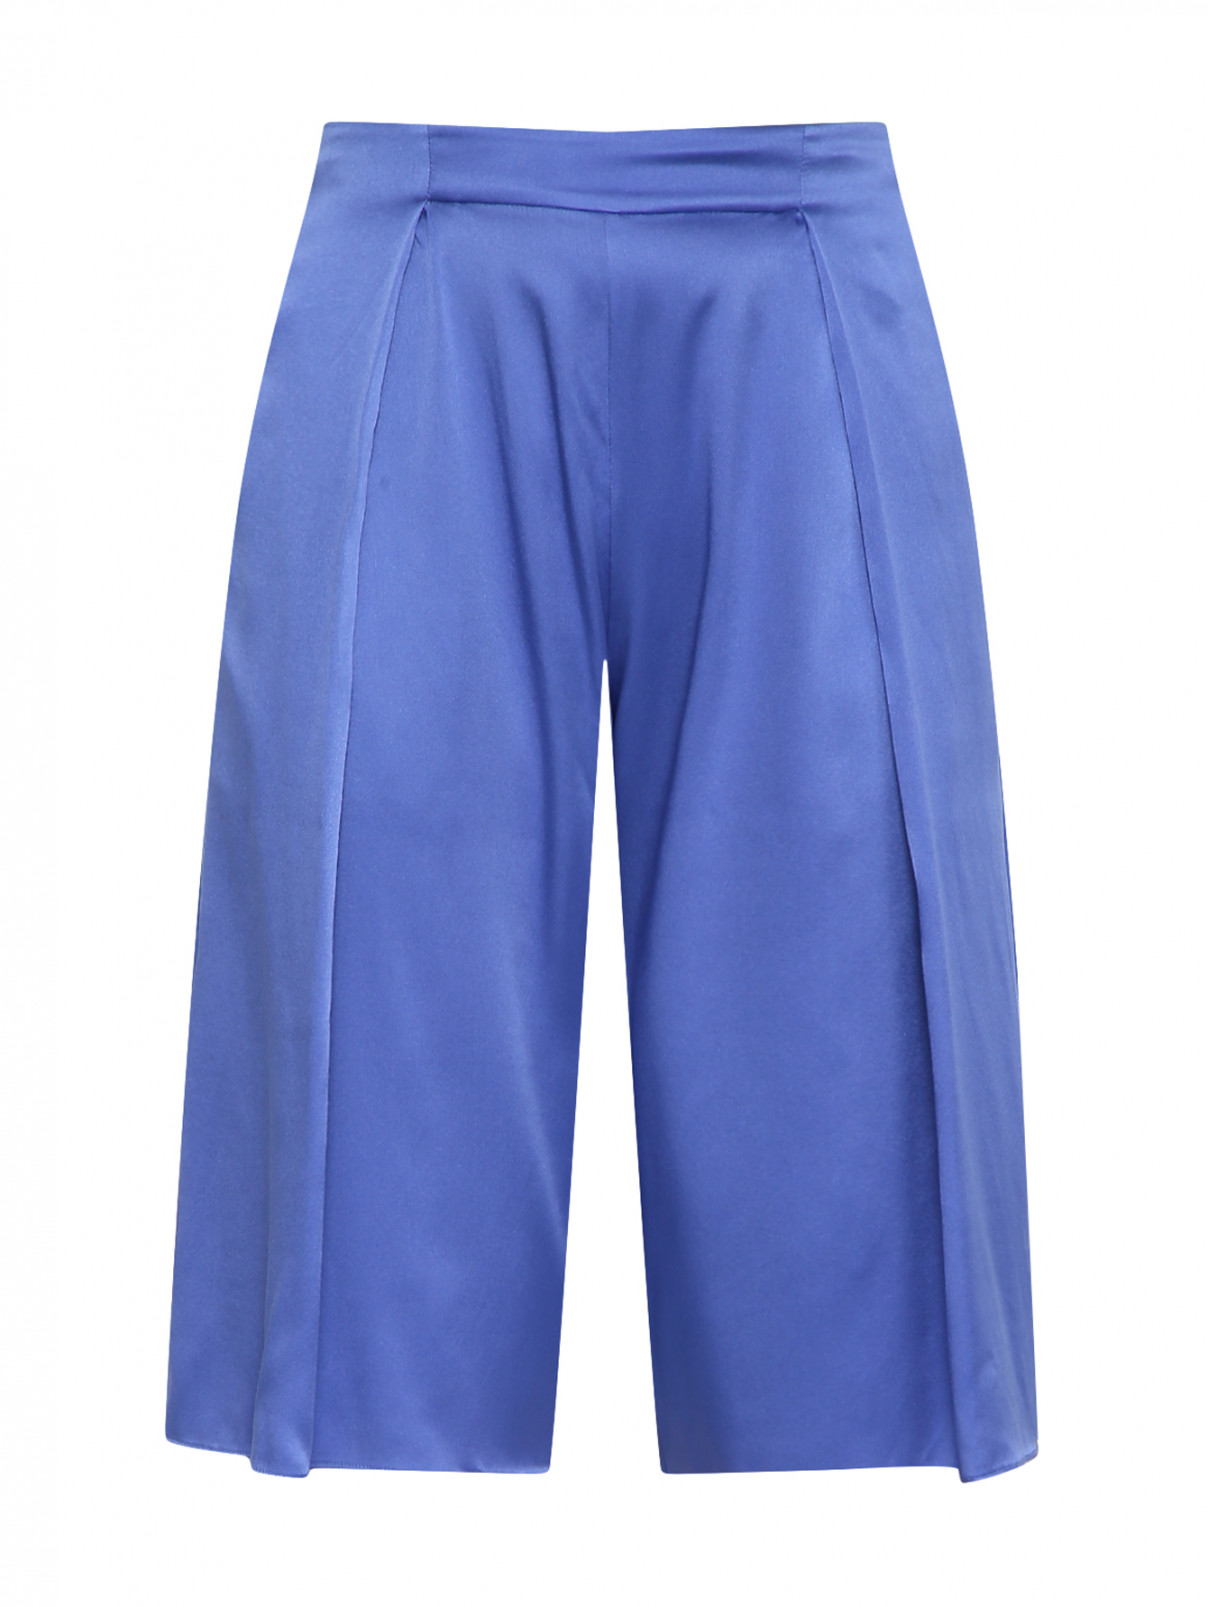 Удлиненные шорты из шелка на резинке ACNE STUDIOS  –  Общий вид  – Цвет:  Синий